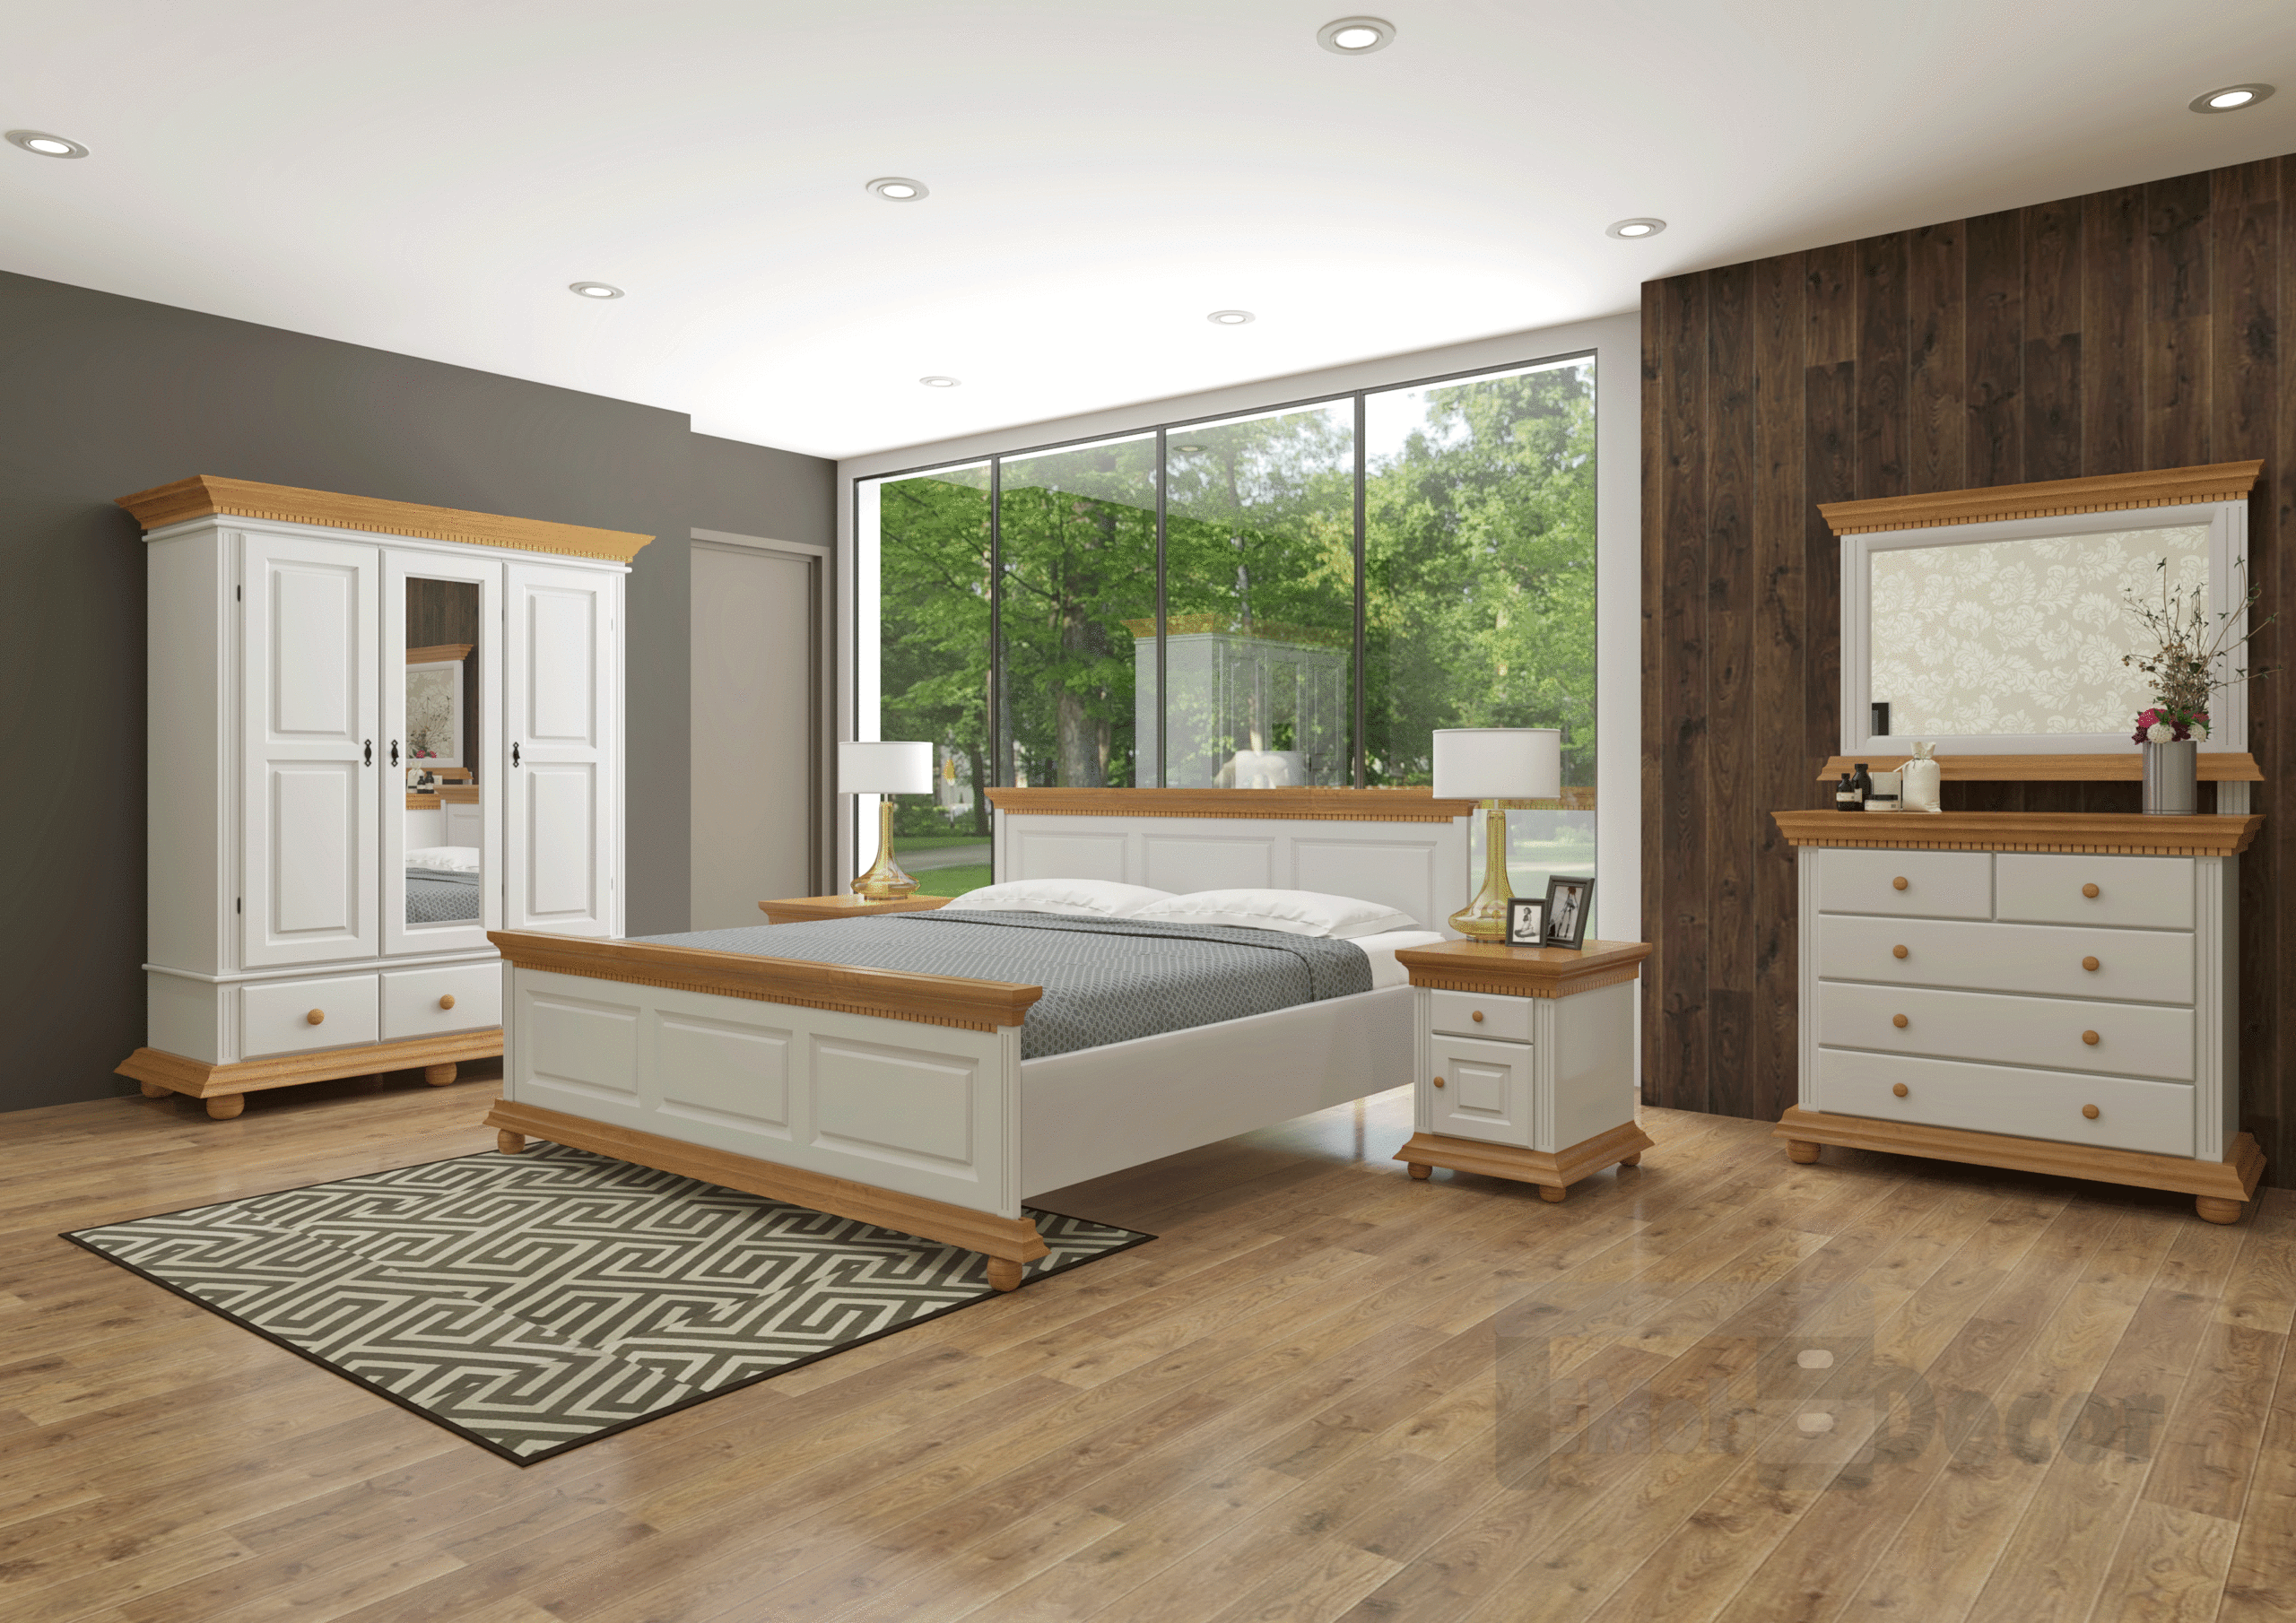 Dormitor Luxus Lemn Masiv cu Dulap 3 Usi